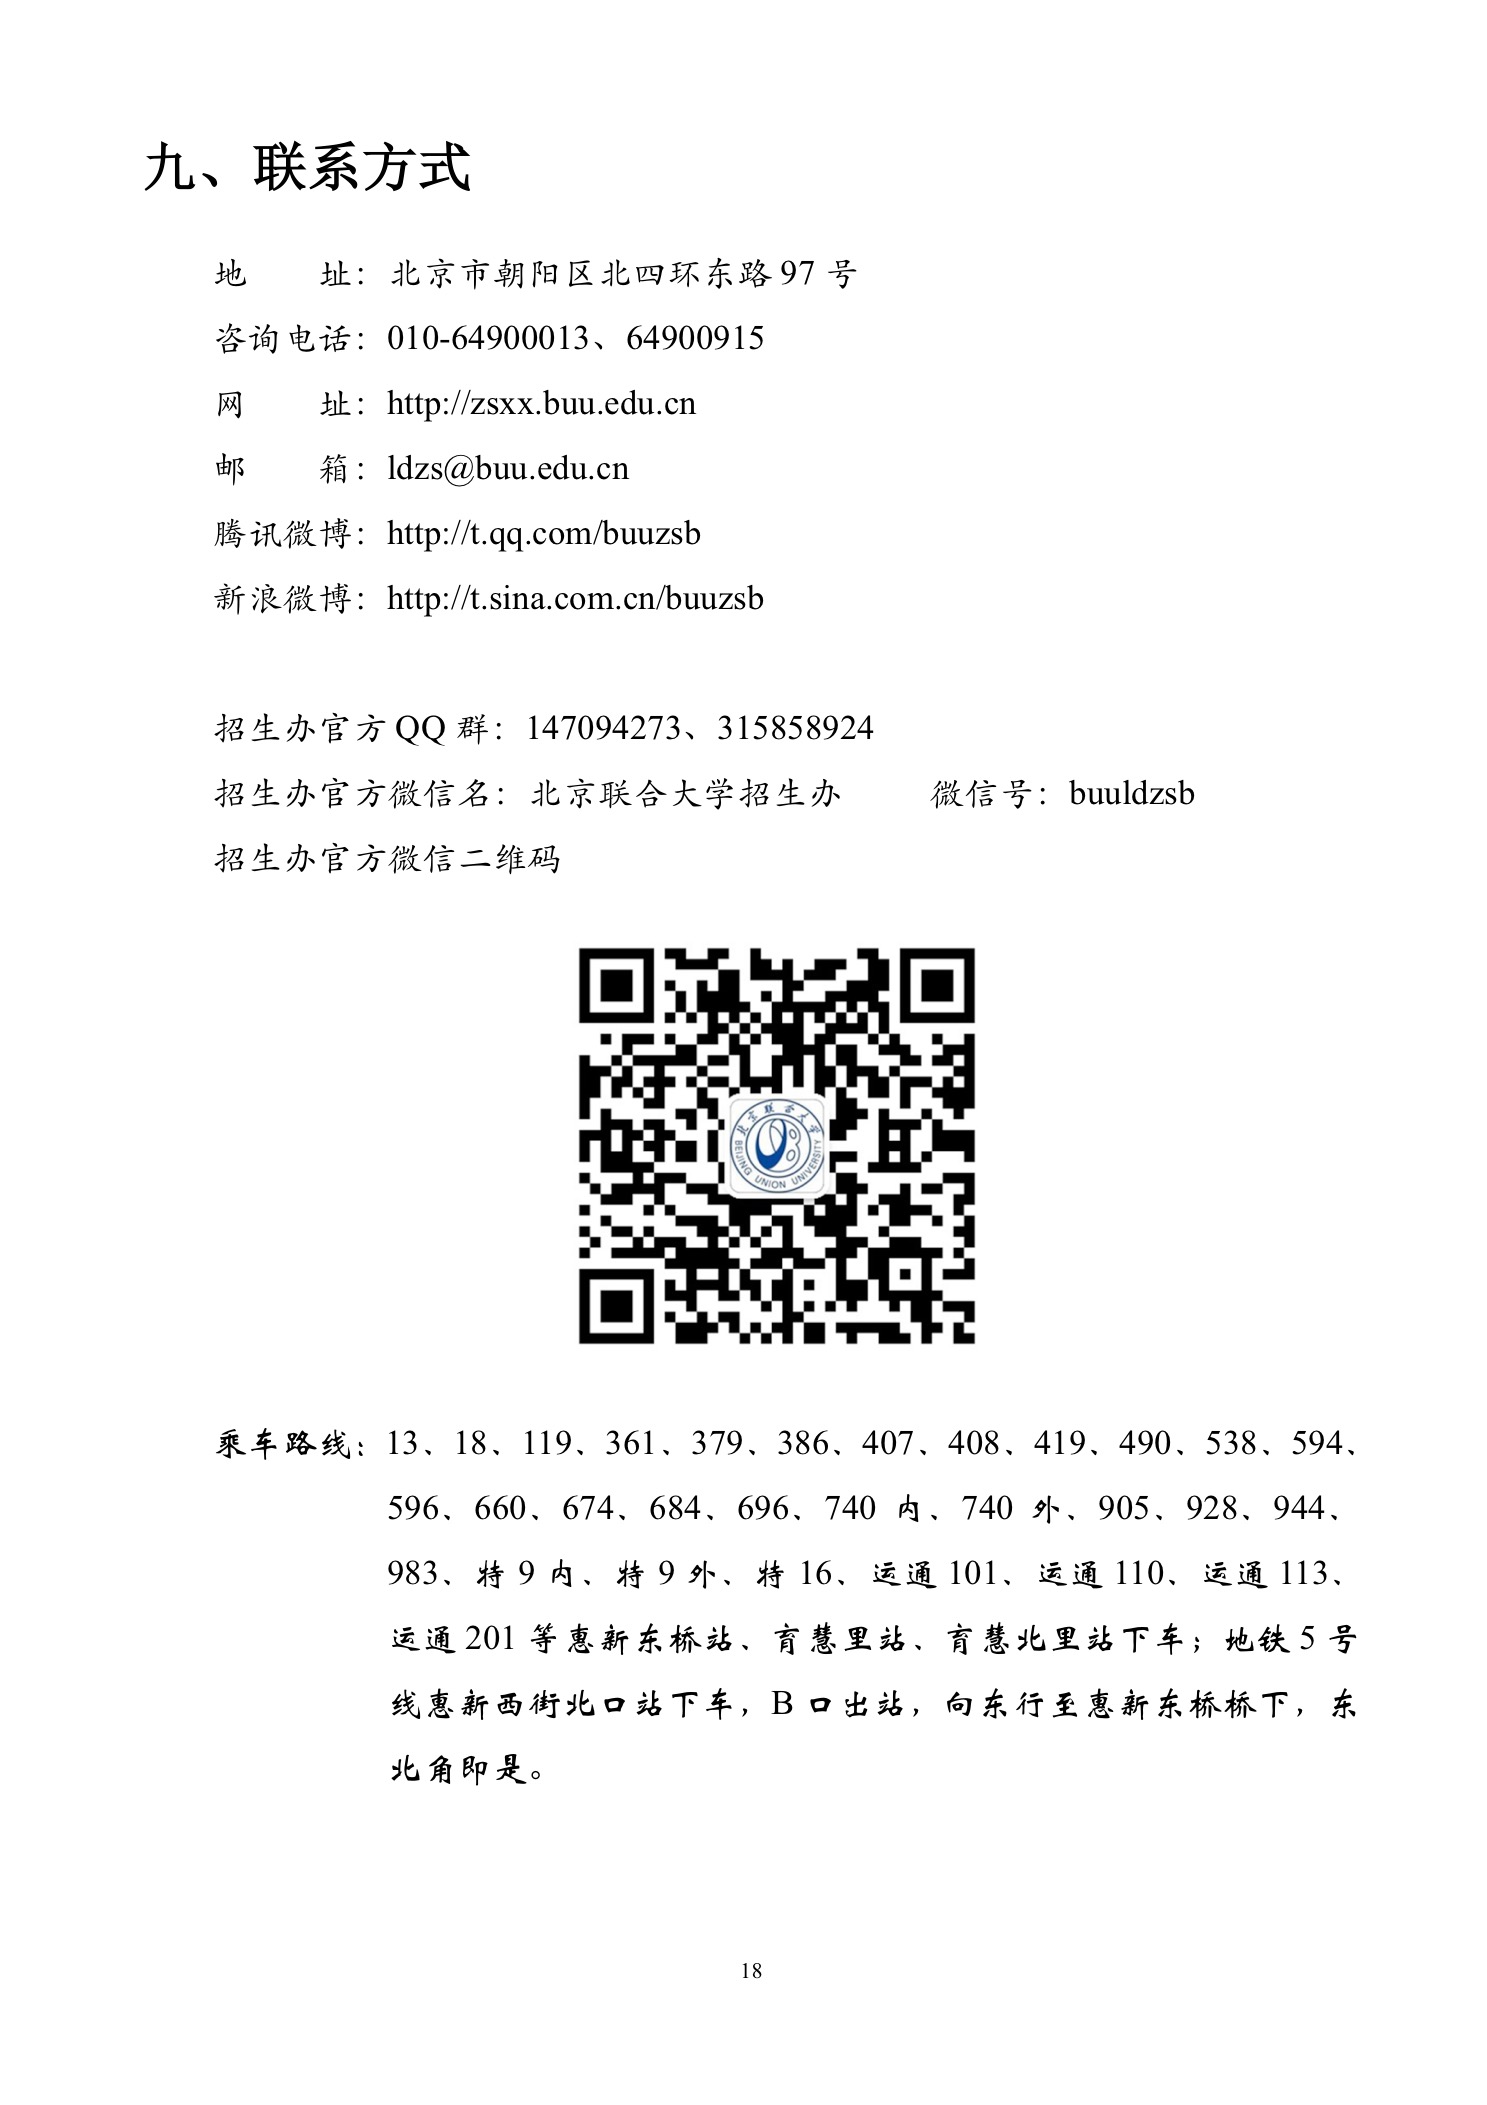 北京联合大学2018年艺术类招生简章20180103-page18 2.jpeg